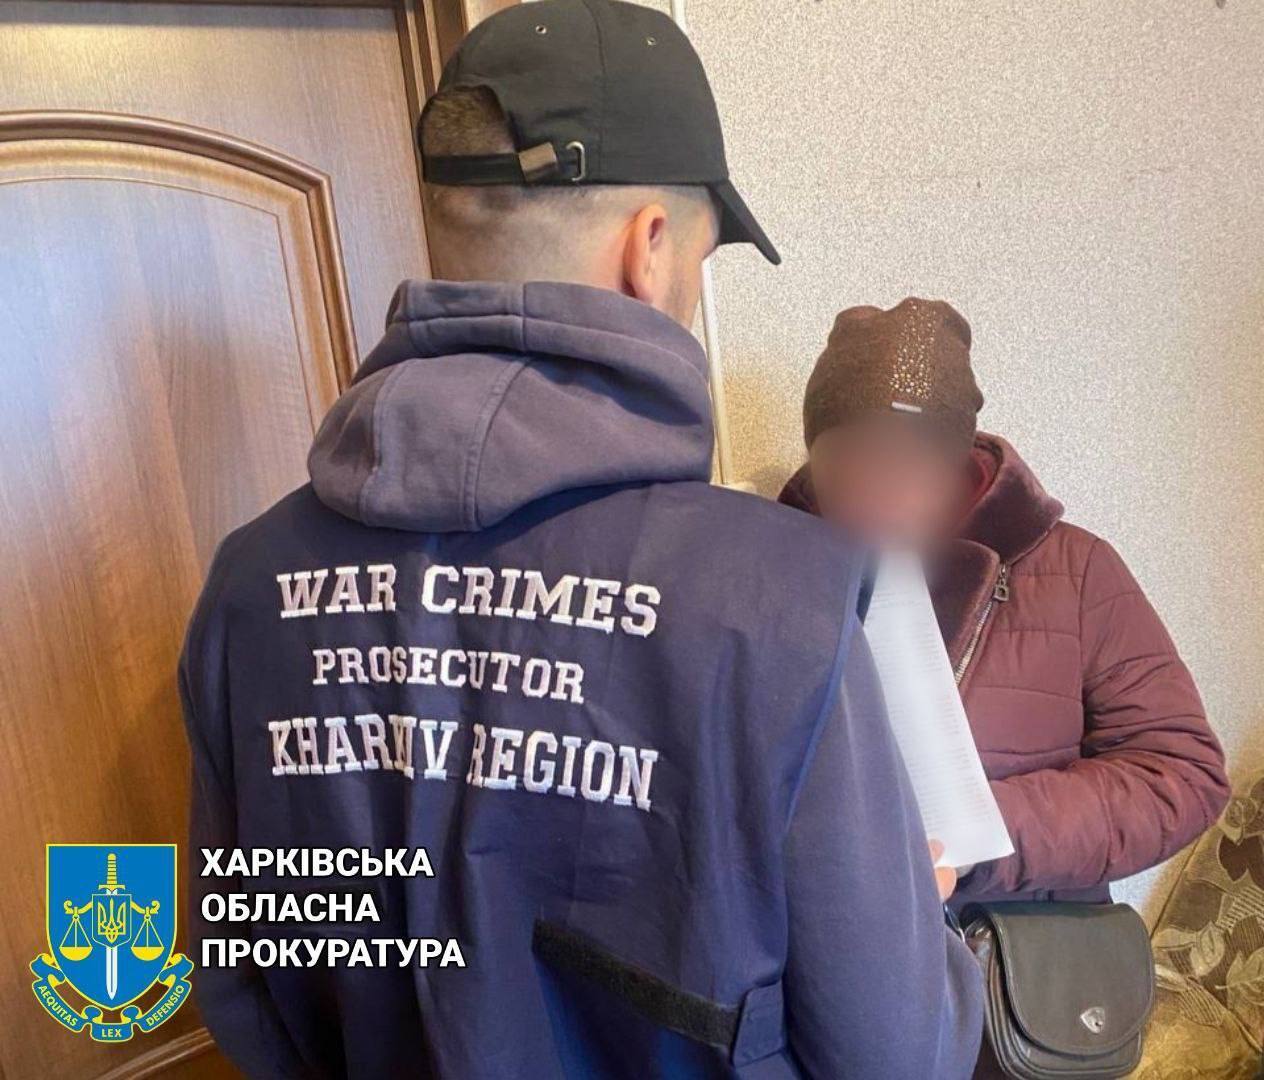 Распространяла российскую пропаганду: в Харьковской области будут судить очередную коллаборантку